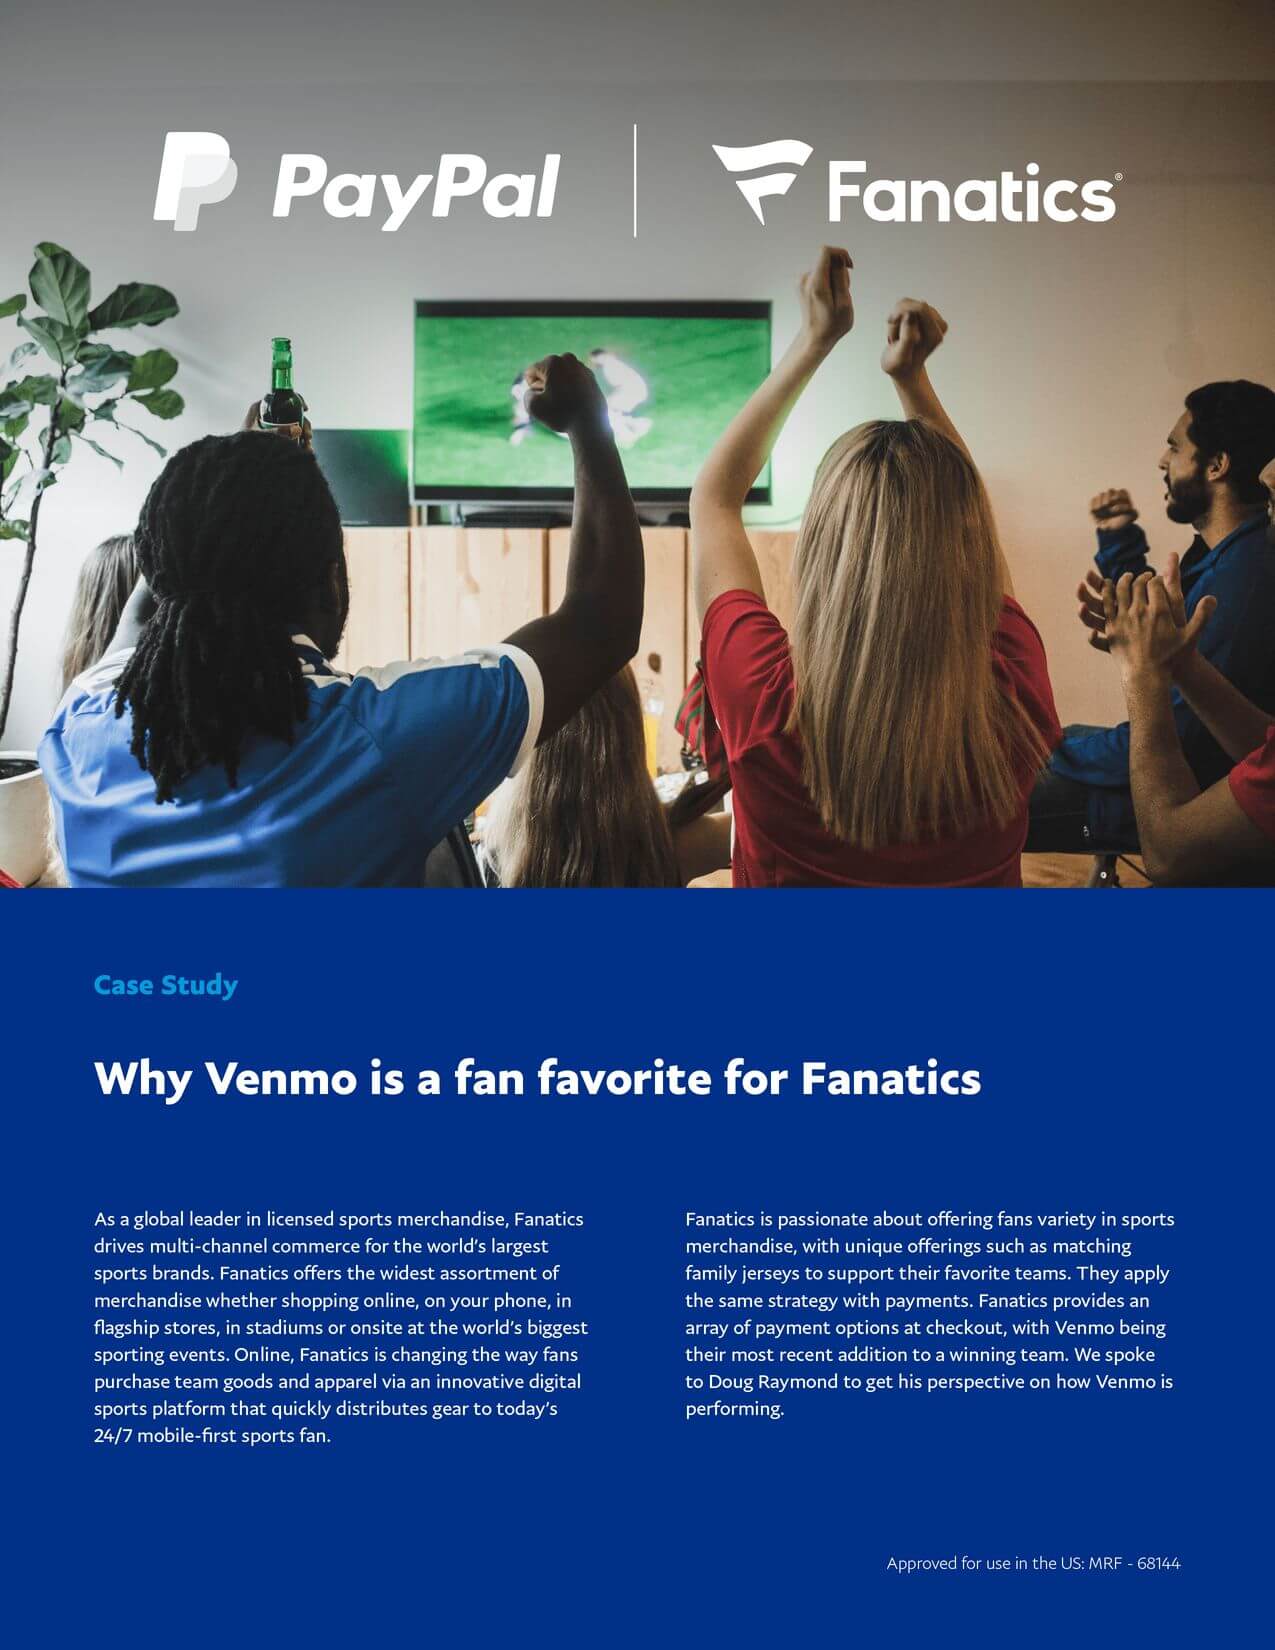 A Fan Favorite: Fanatics and Venmo